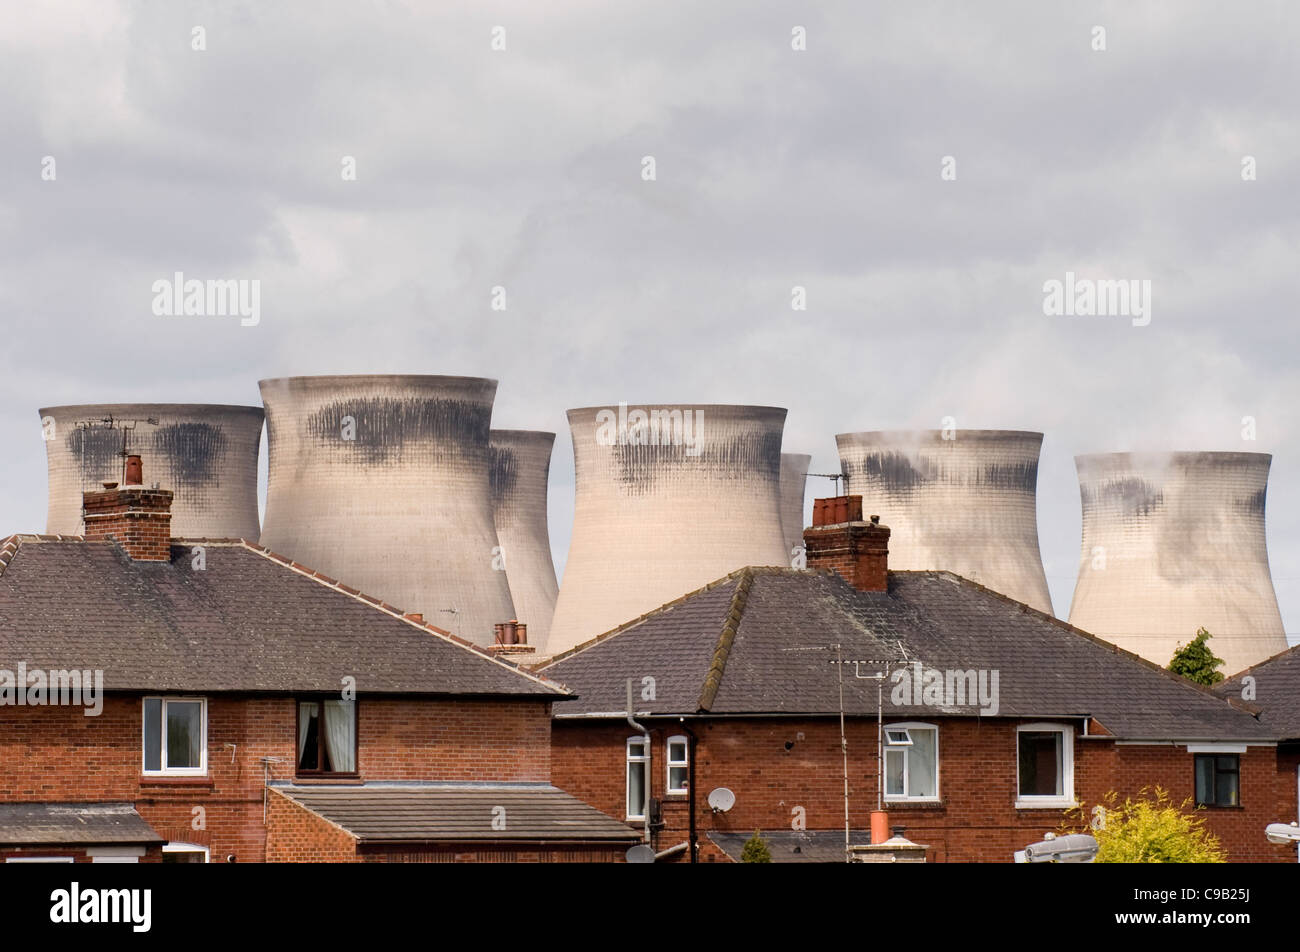 Sur les toits d'Henrichenburg Shiplift 'C' Power Station - maisons en milieu urbain ville éclipsée par les tours de refroidissement élevée - Knottingley, West Yorkshire, Angleterre, Royaume-Uni. Banque D'Images